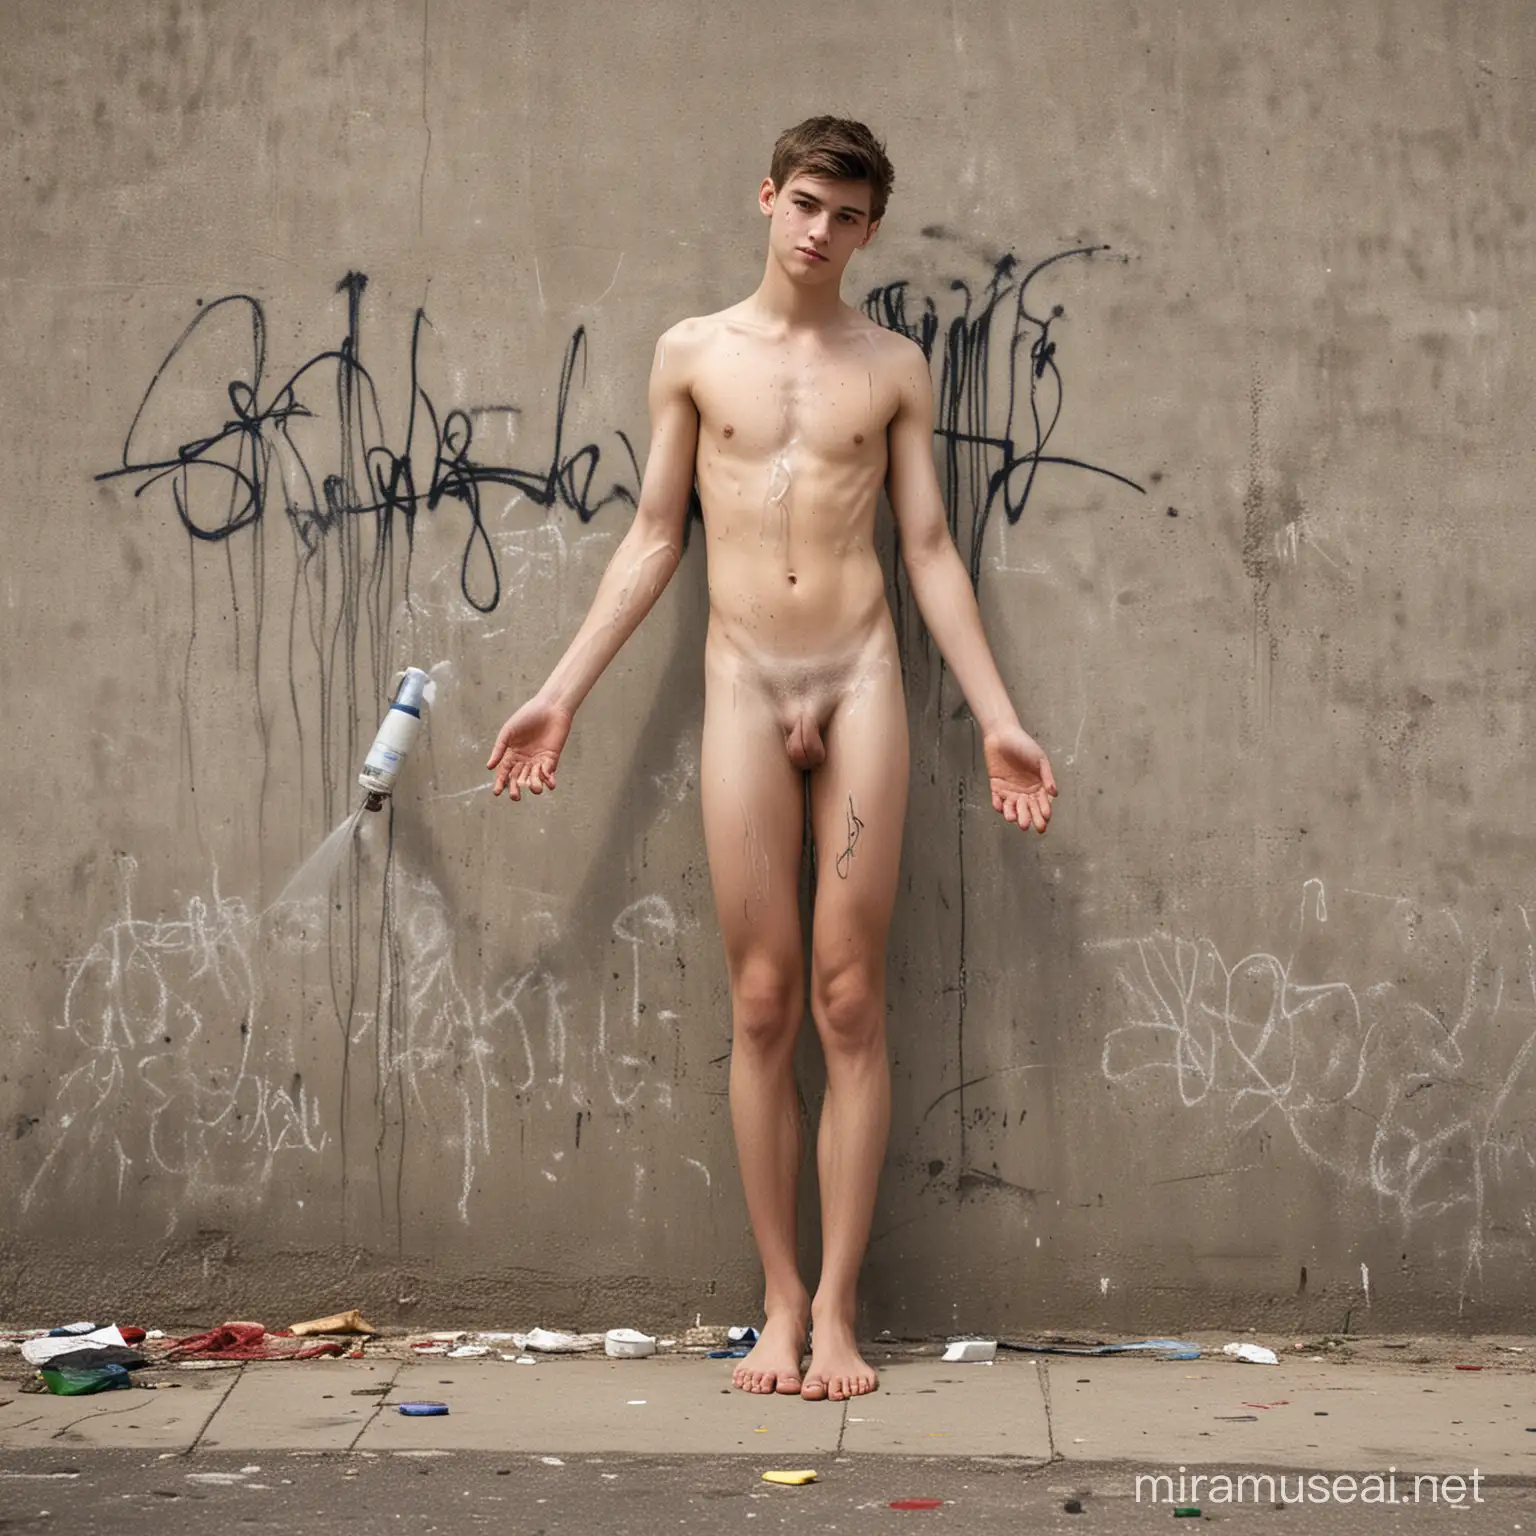 Rapaz de 18 anos, completamente nu, descalço, sem nenhuma roupa, corpo bem definido, faz grafite (pintura com spray) em um muro, representando homem de terno e gravata, cobrindo os genitais, demonstrando vergonha.